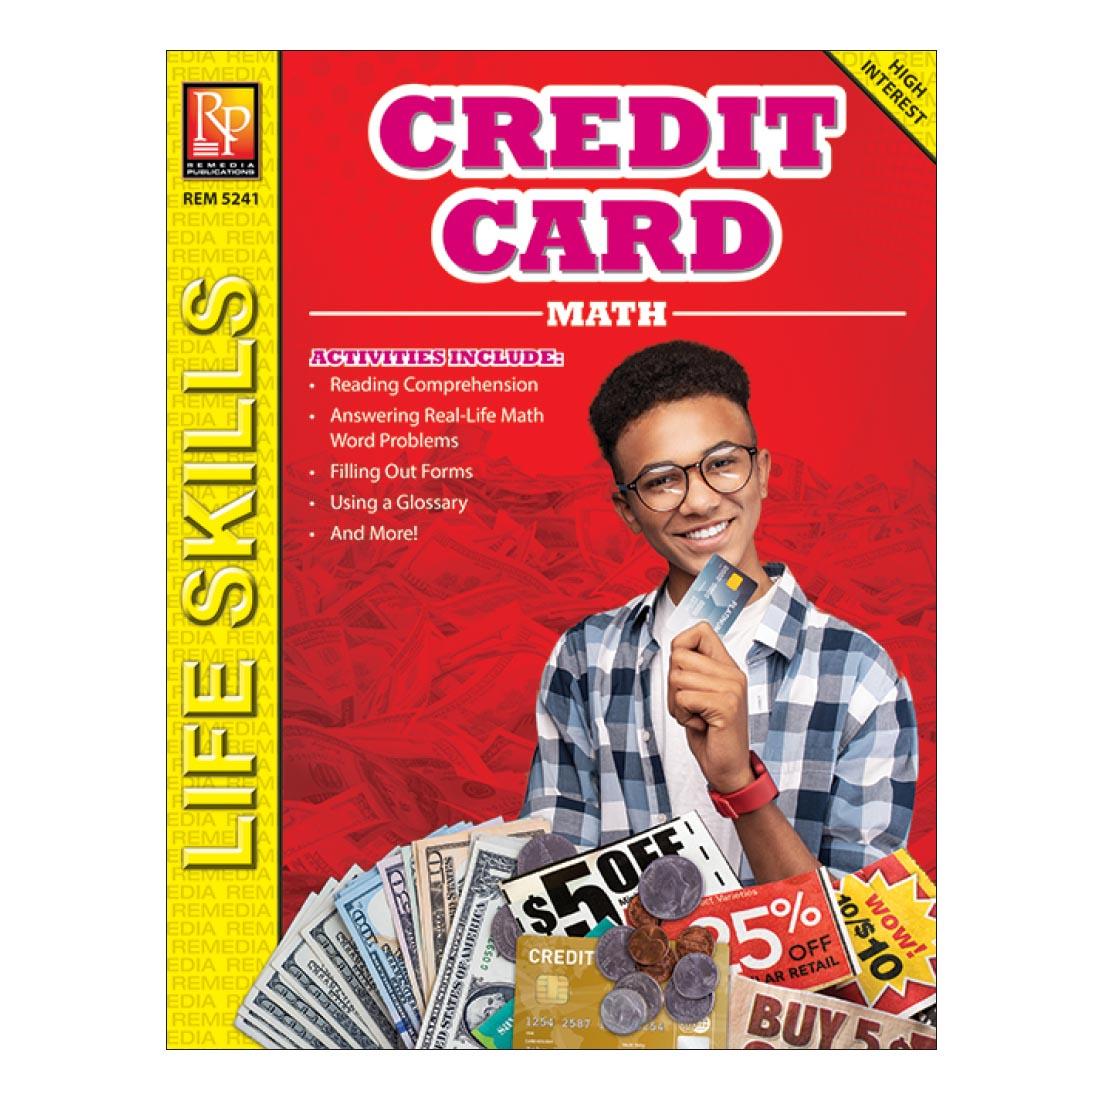 Credit Card Math